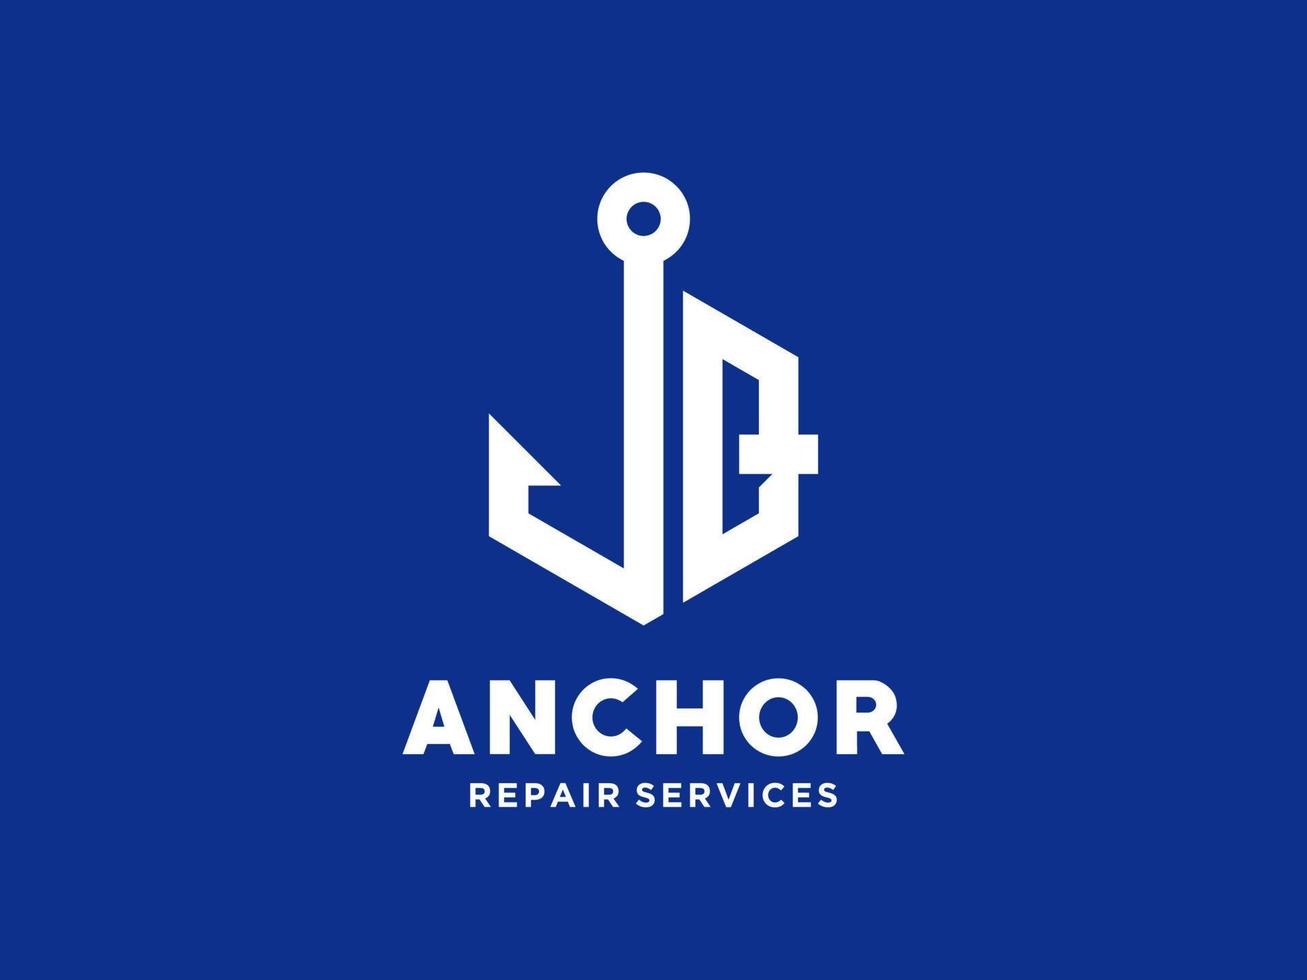 diseño de logotipo q ancla alfabeto artístico para barco barco marina transporte náutico vector libre